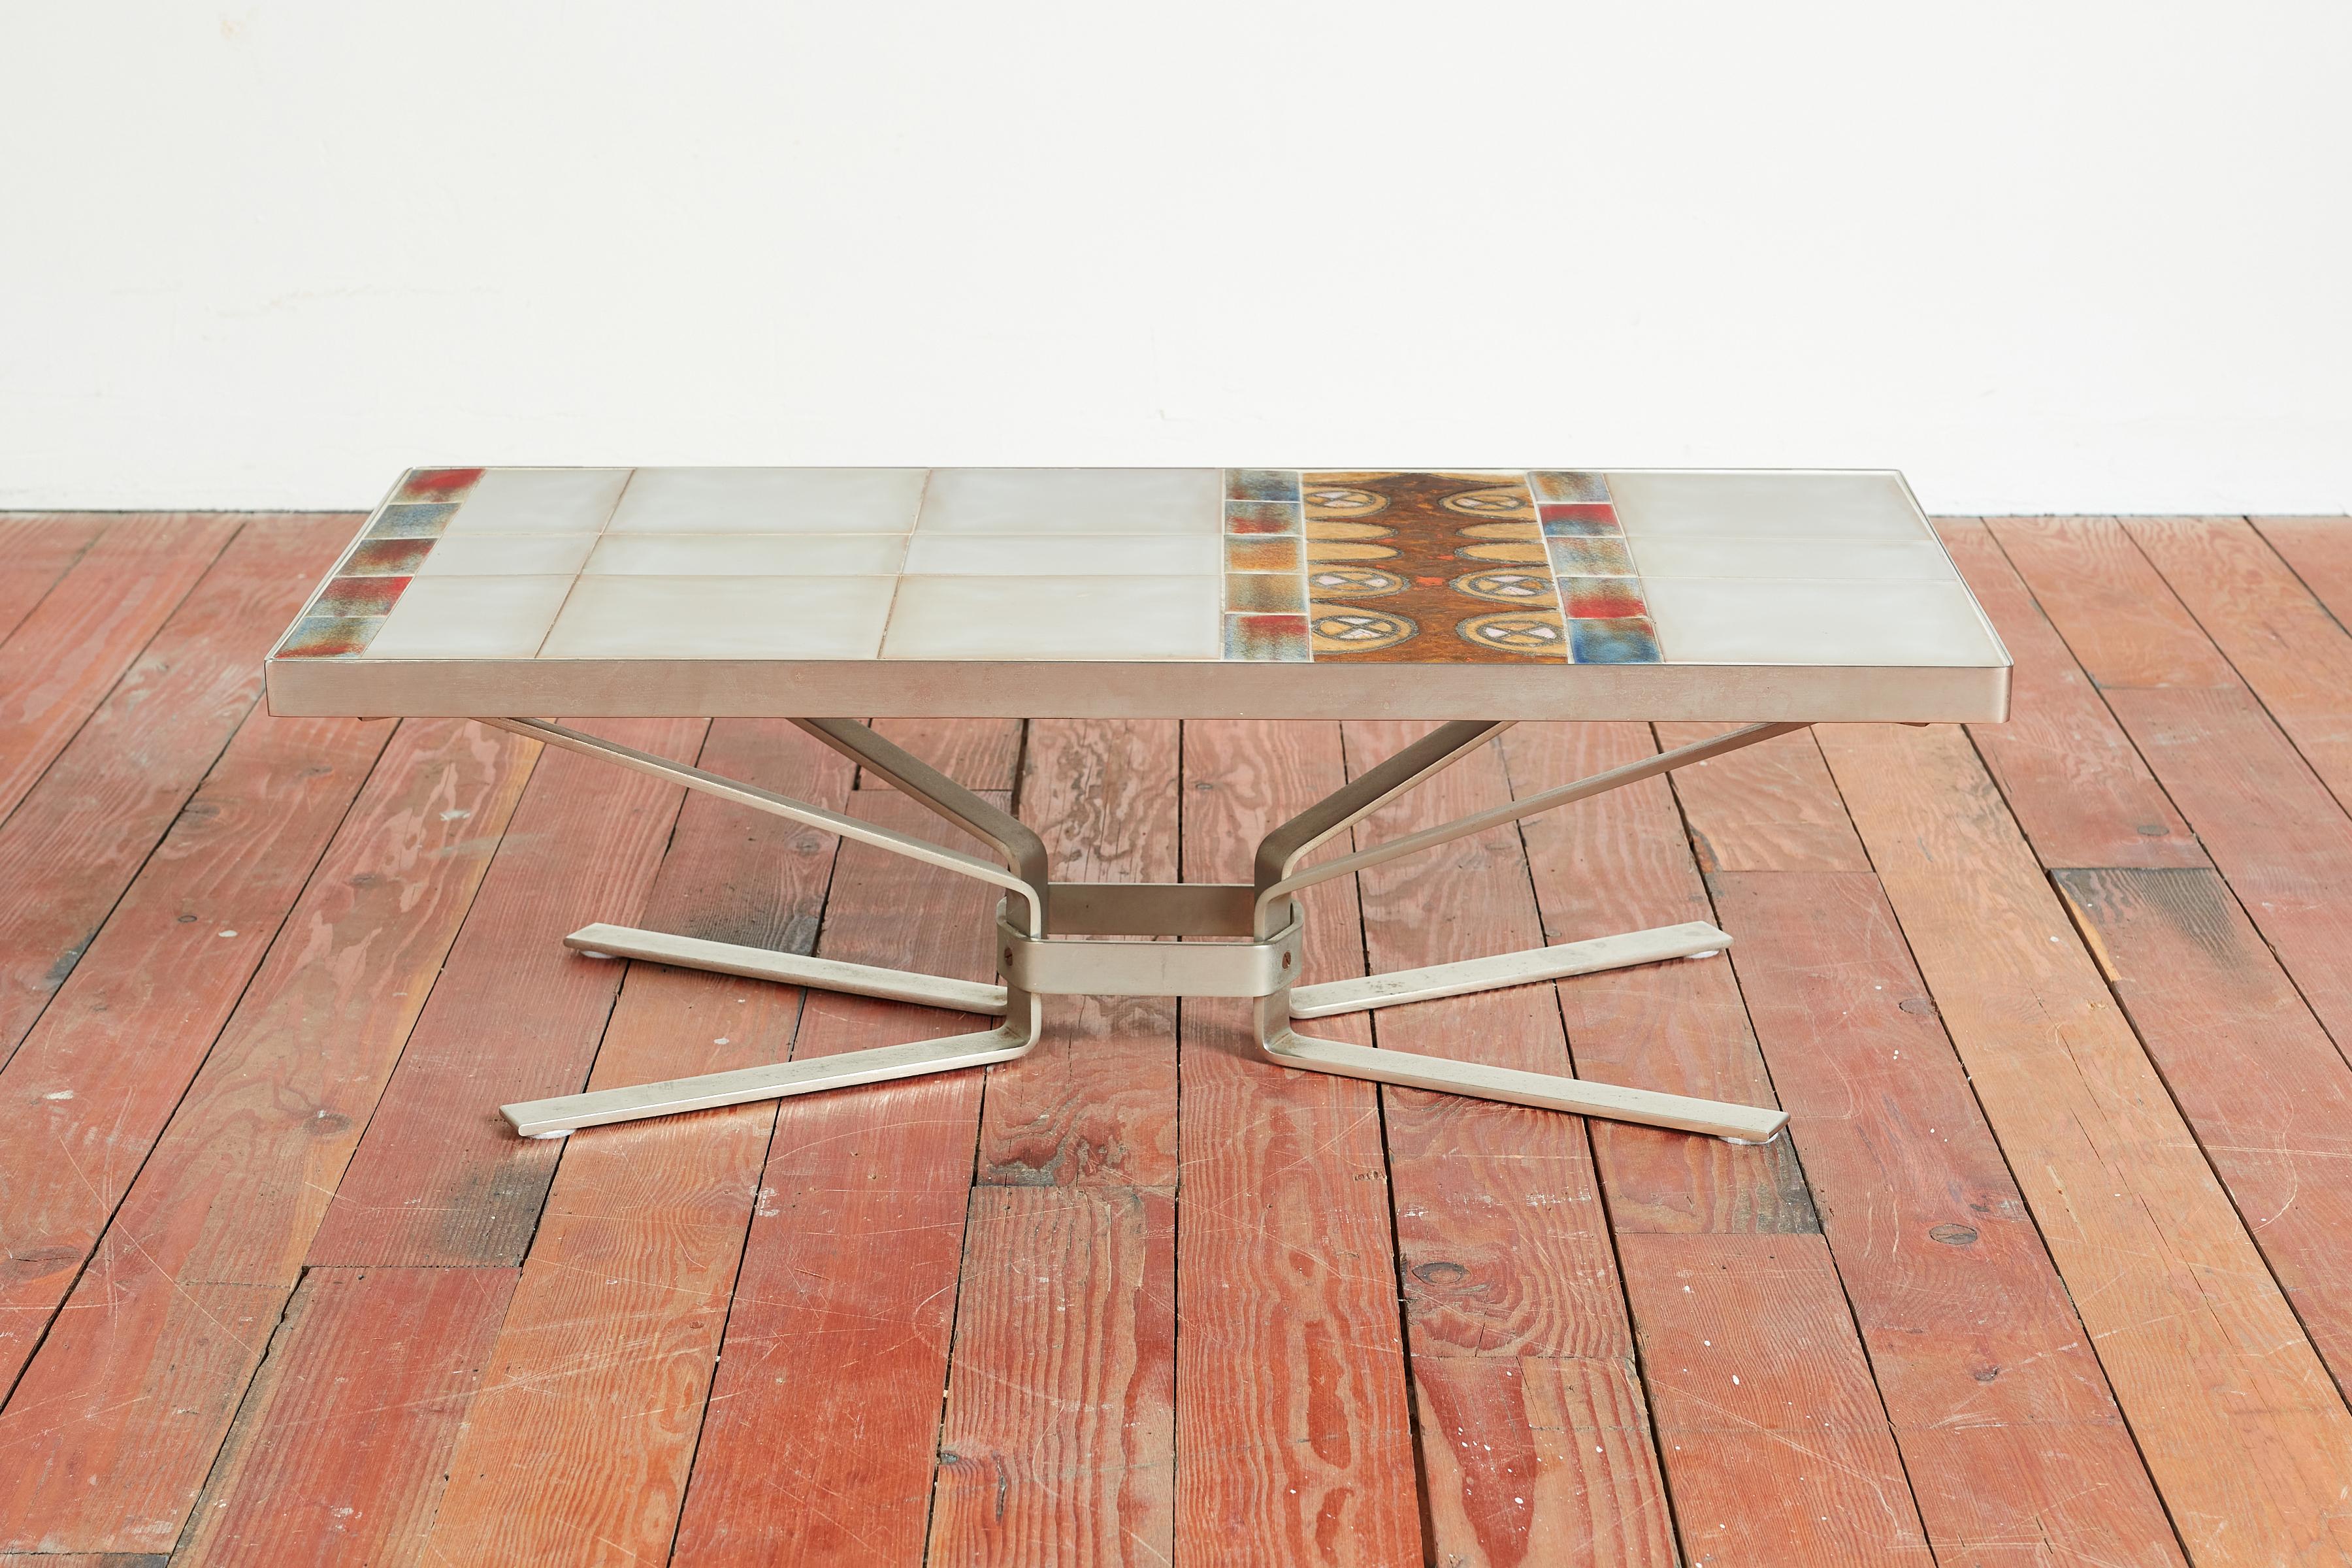 Merveilleuse table basse de l'artisan Jean Gregorieff - France, années 1970
Carreaux de céramique peints à la main dans une belle palette de couleurs 
Base lourde en acier inoxydable.